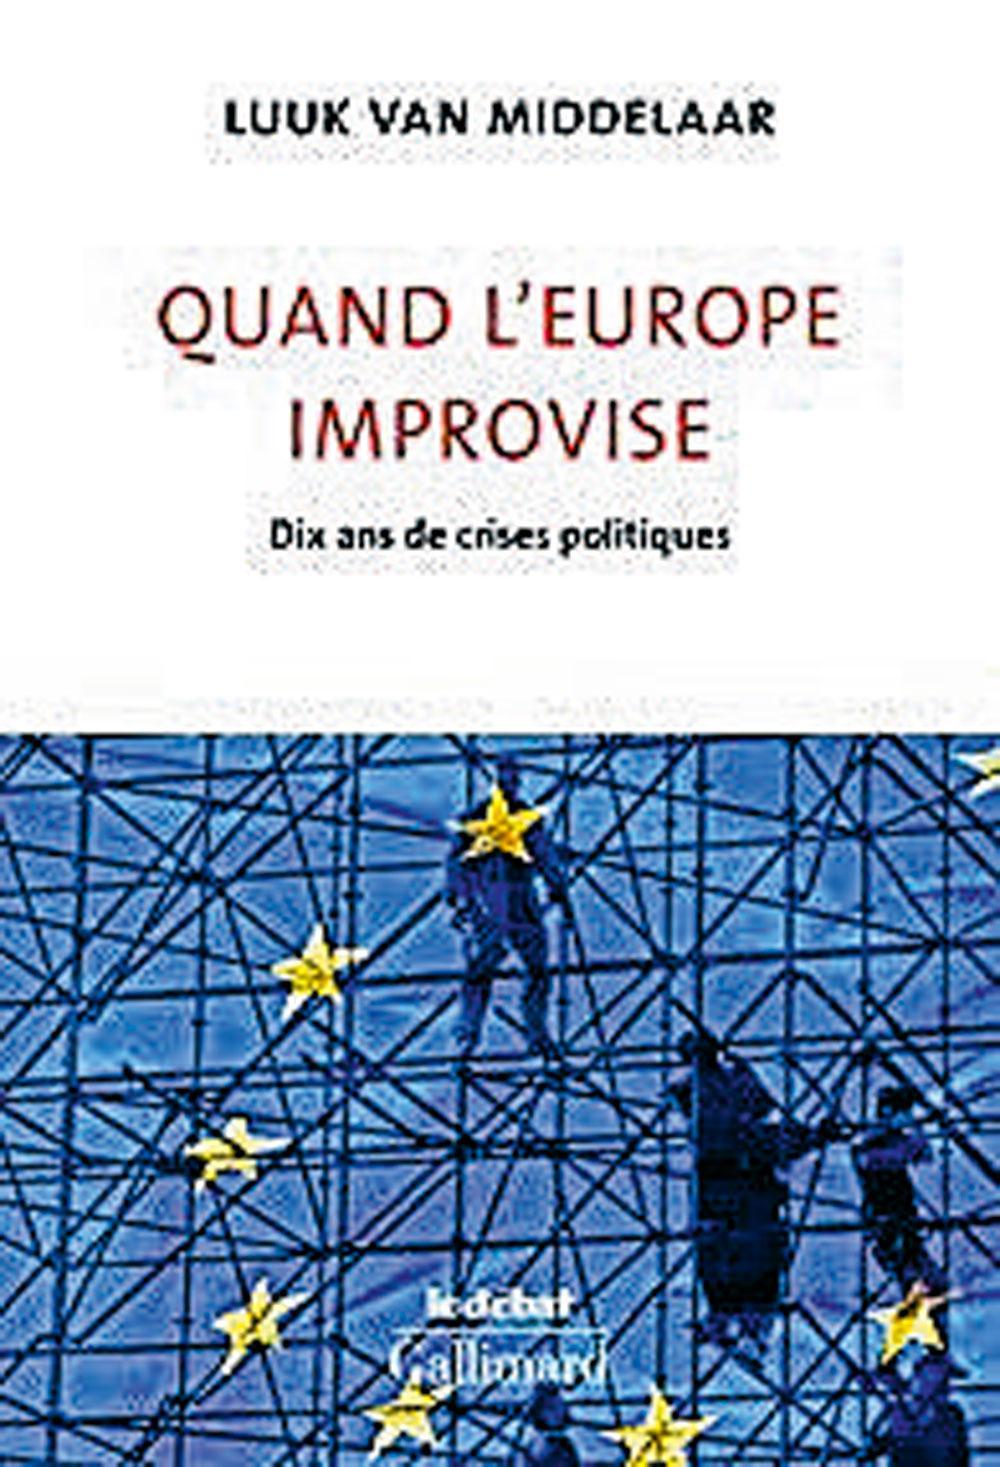 Luuk van Middelaar, Quand l'Europe improvise: dix ans de crises politiques, éditions Gallimard, 416 blz., 24 euro